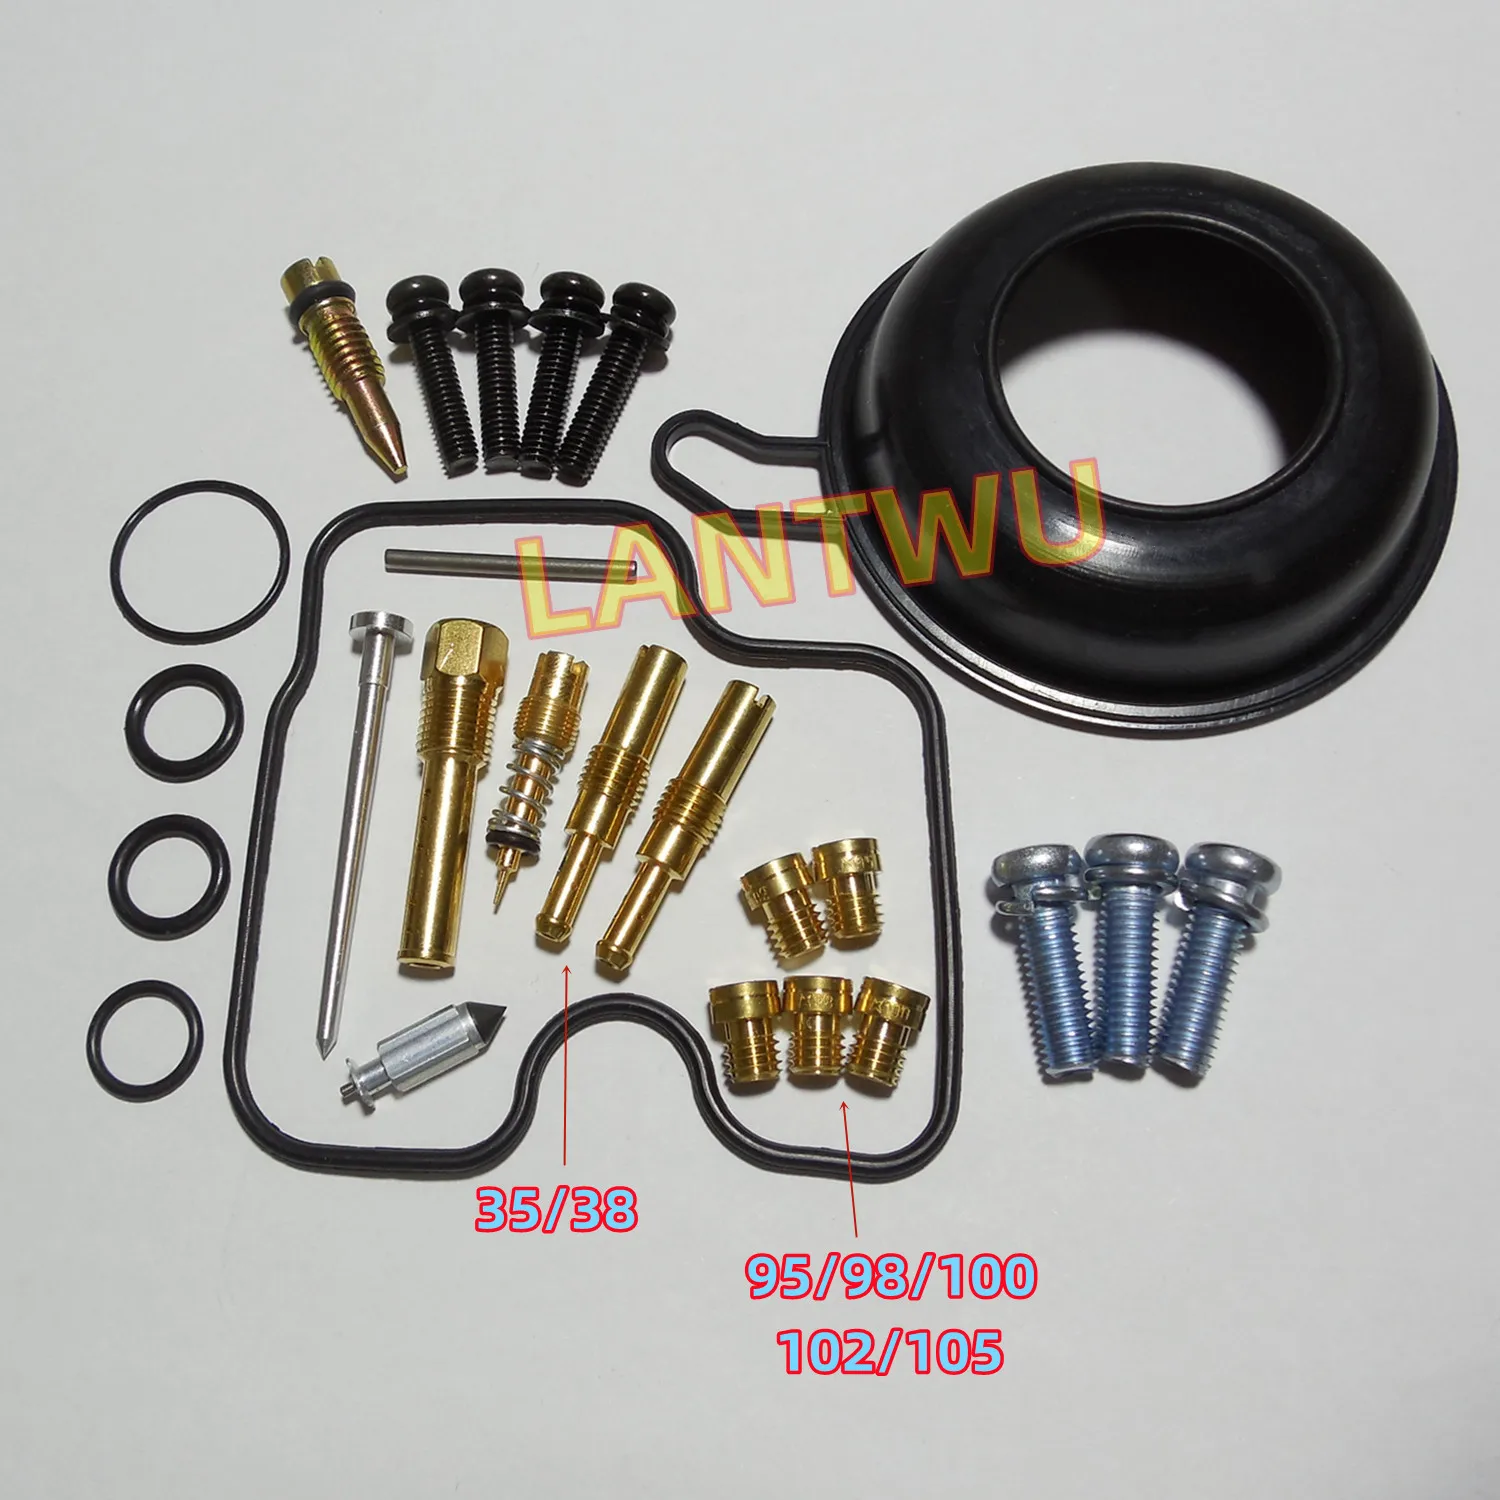 For Honda MC22/CBR22 CBR250RR Motorcycle Keihin Carburetor Repair Kit with Vacuum Diaphragm/Rubber Seal and Mounting Screws